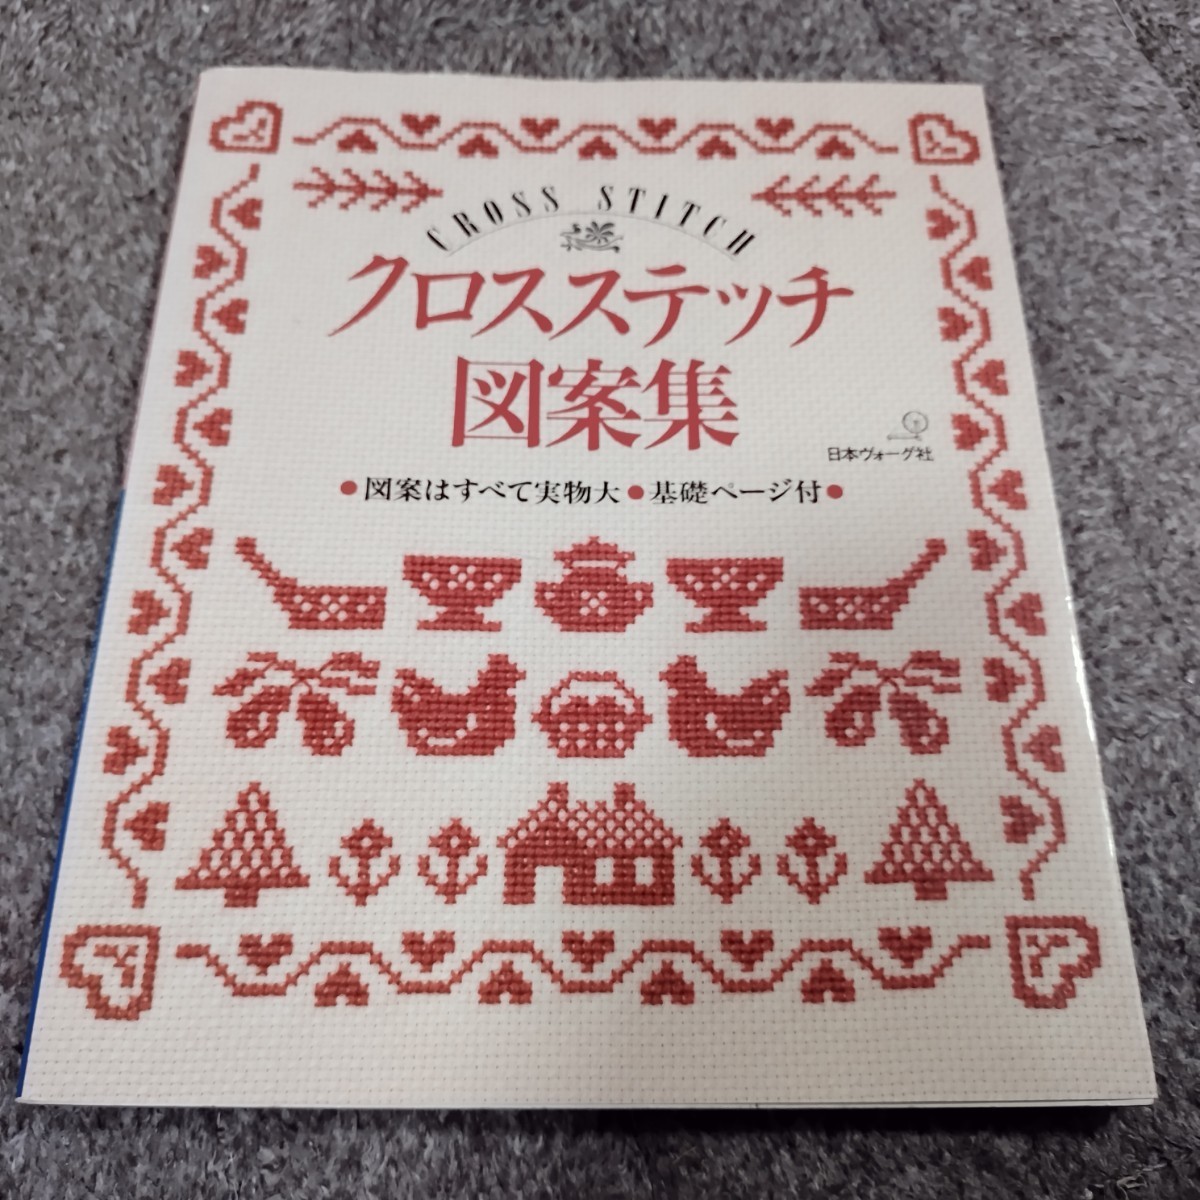 クロスステッチ図案集 日本ヴォーグ社 刺しゅう 本 刺繍